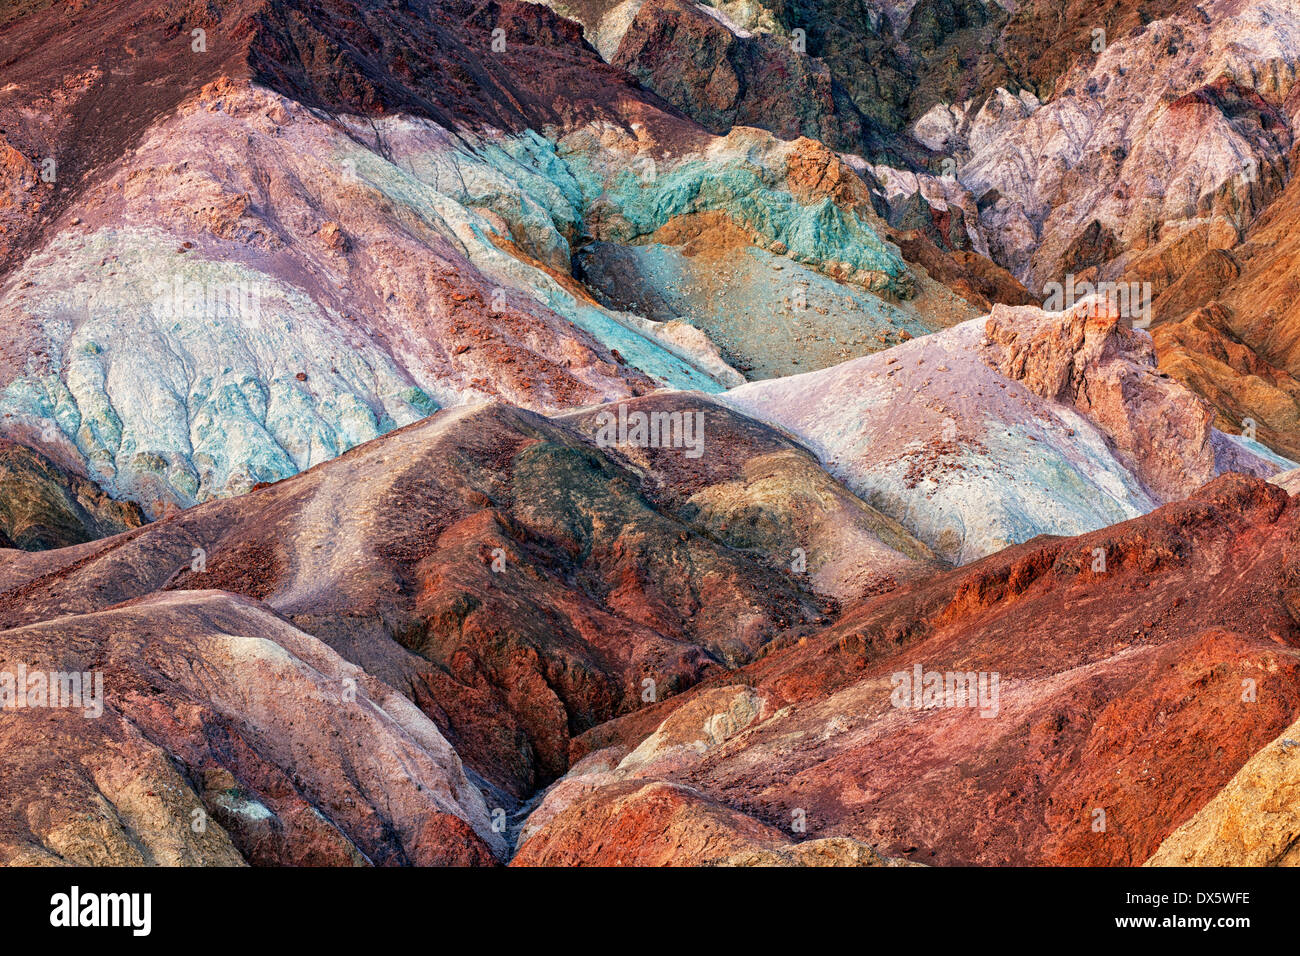 Le crépuscule enrichit les couleurs vives de la palette de l'artiste dans la Death Valley National Park. Banque D'Images